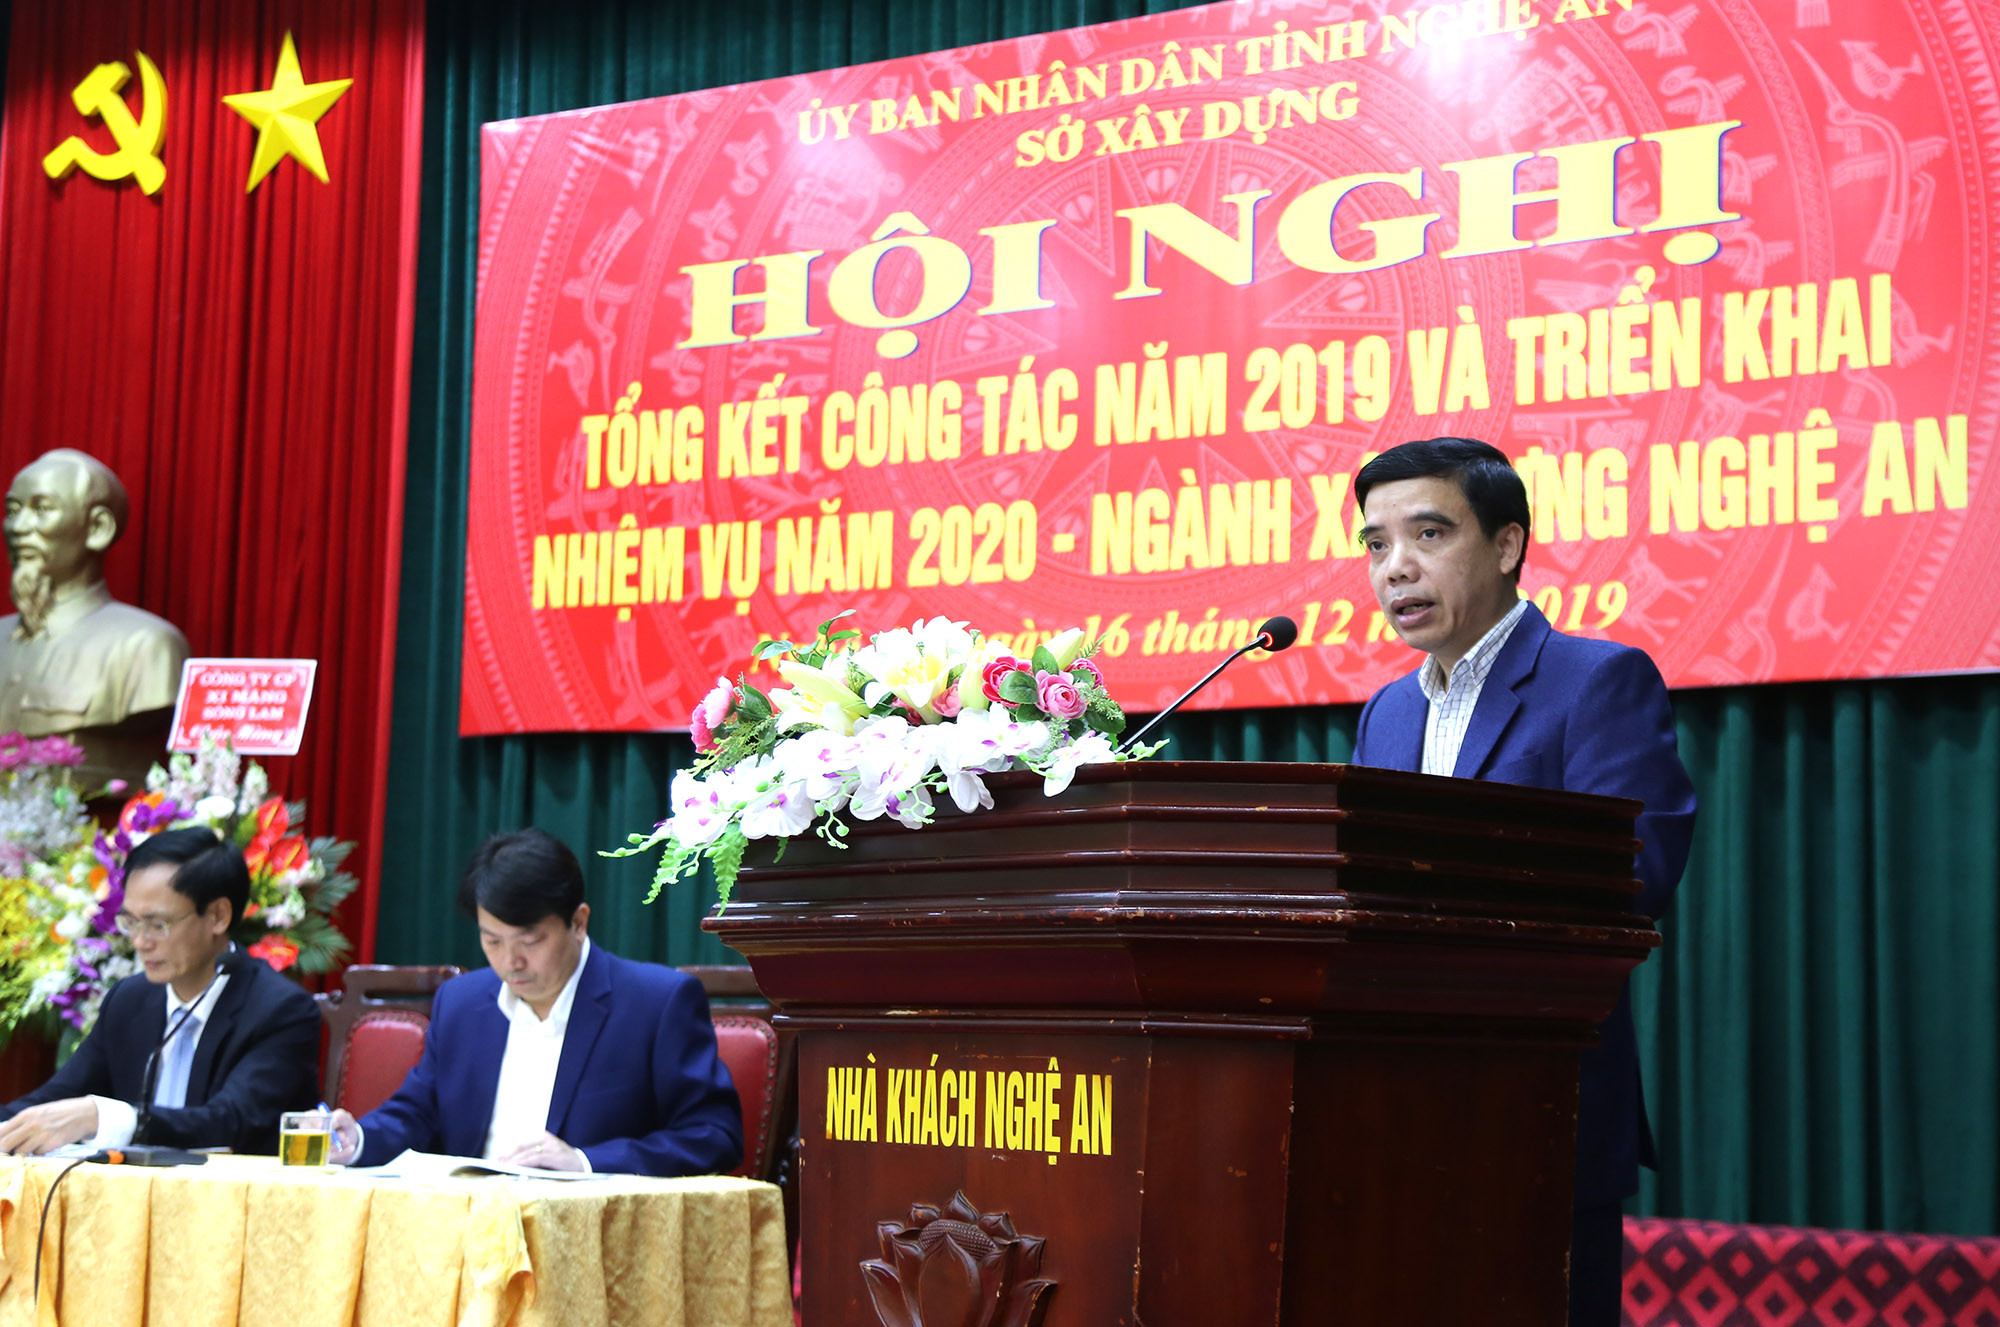 Ông Nguyễn Quốc Thắng- Trưởng phòng QLĐT thành phố Vinh phát biểu, cho rằng công tác cấp quyền sử dụng đất hiện đang gặp nhiều khó khăn. Ảnh: Thu HUyền 